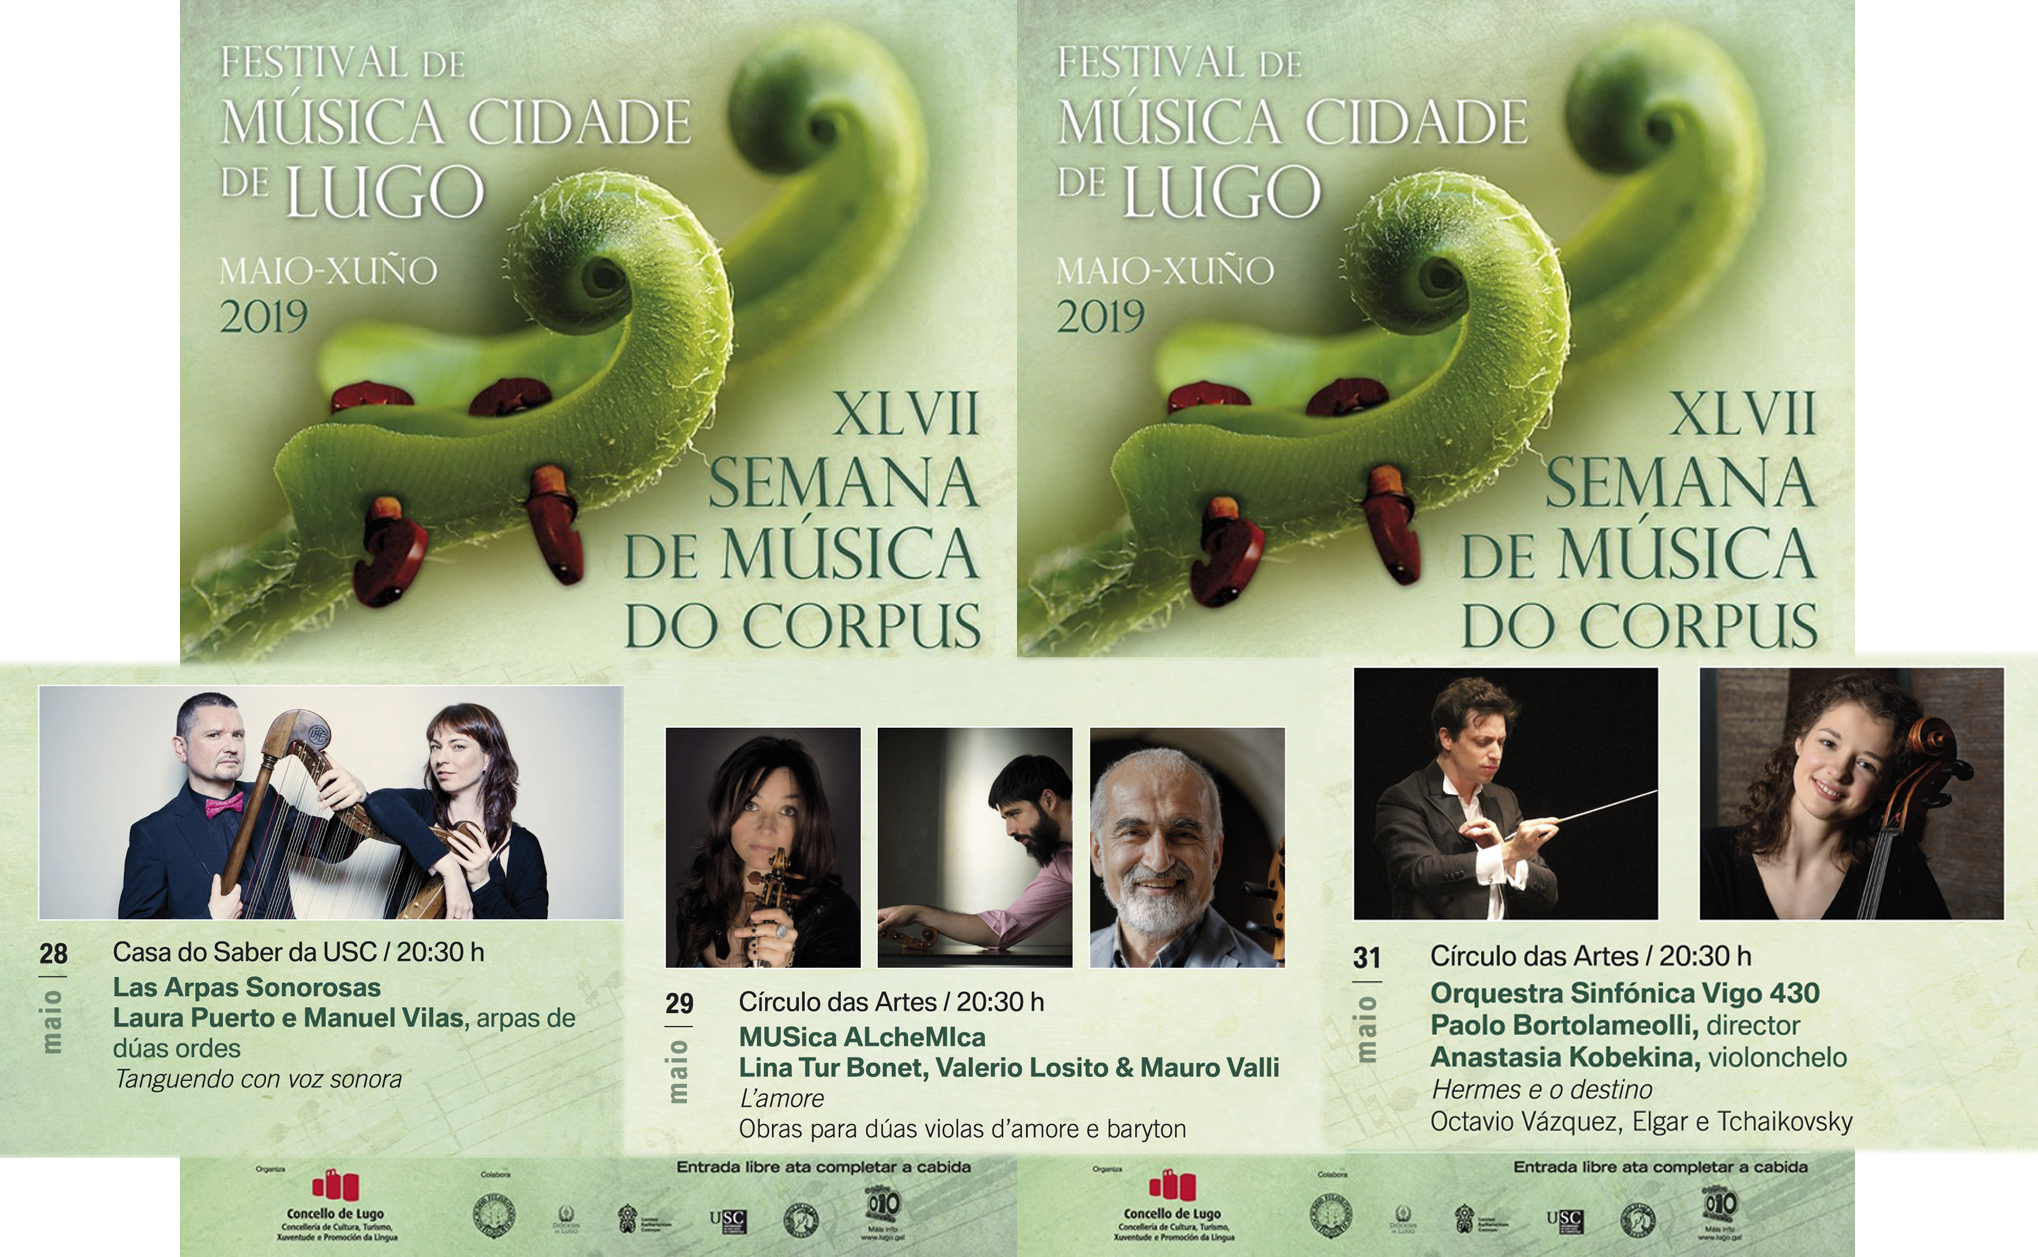 Festival de Música Cidade de Lugo